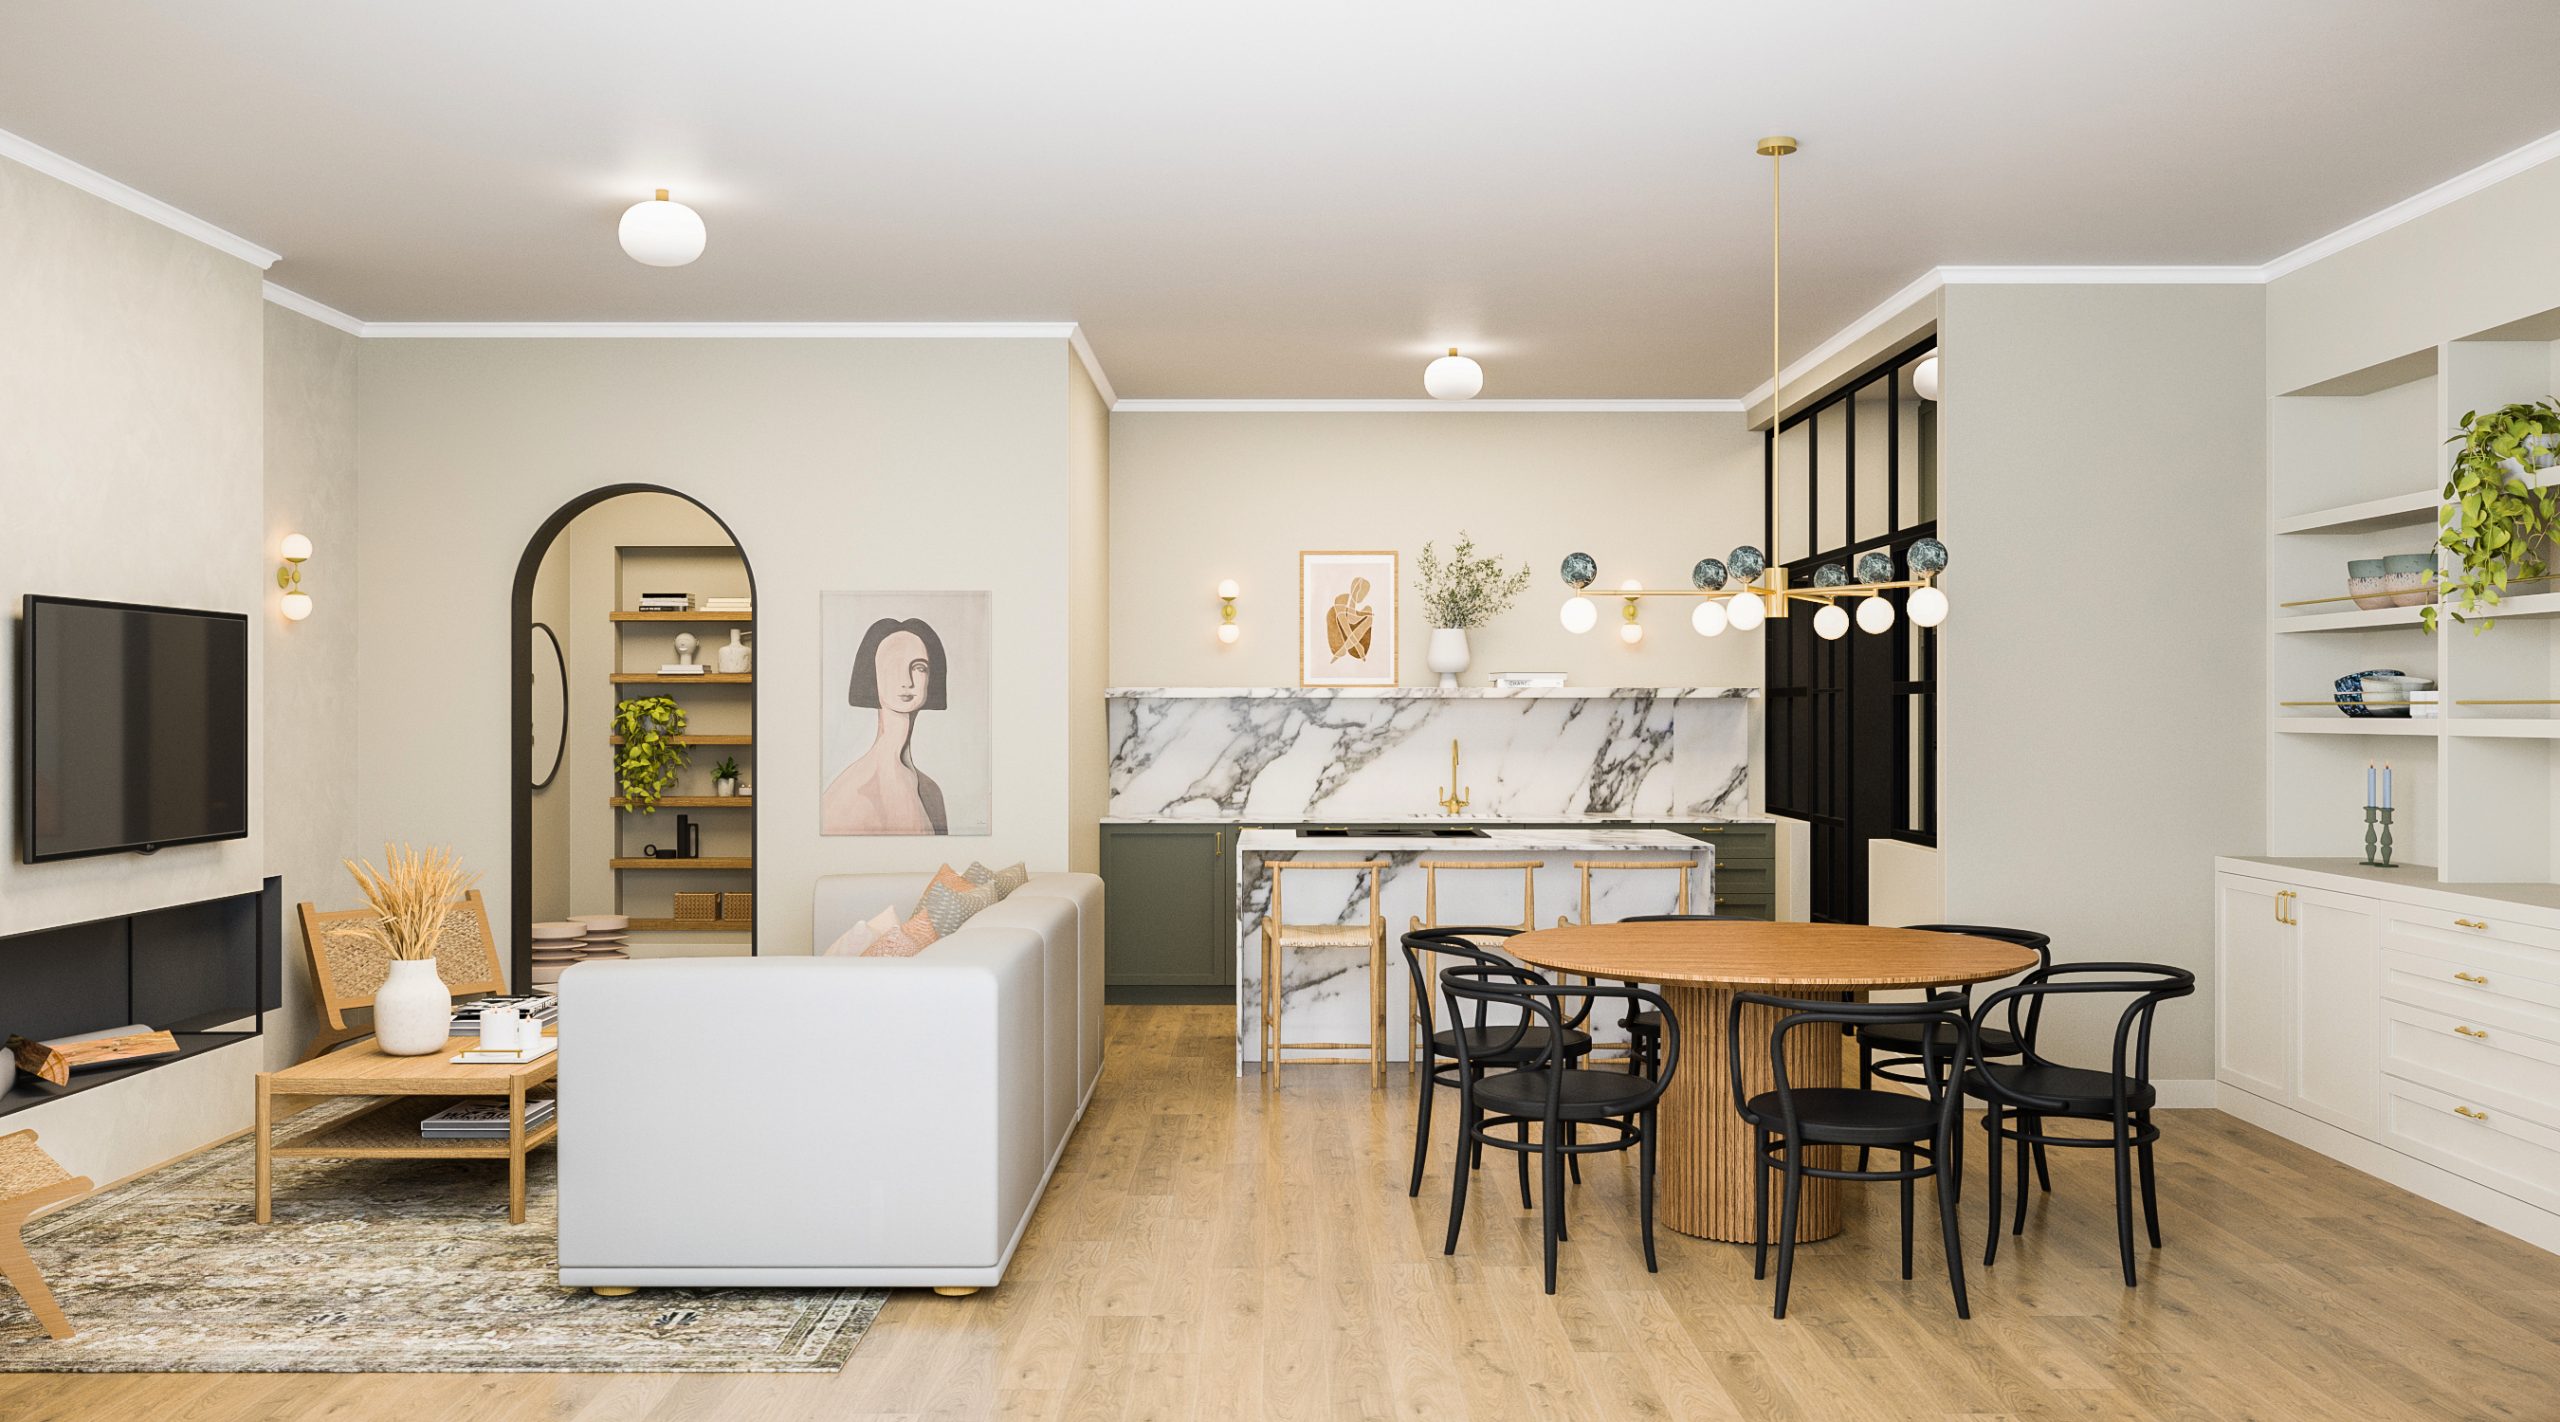 Remodelação e decoração de sala de estar moderna com tons brancos, rosas e verdes e cozinha em open space com ilha